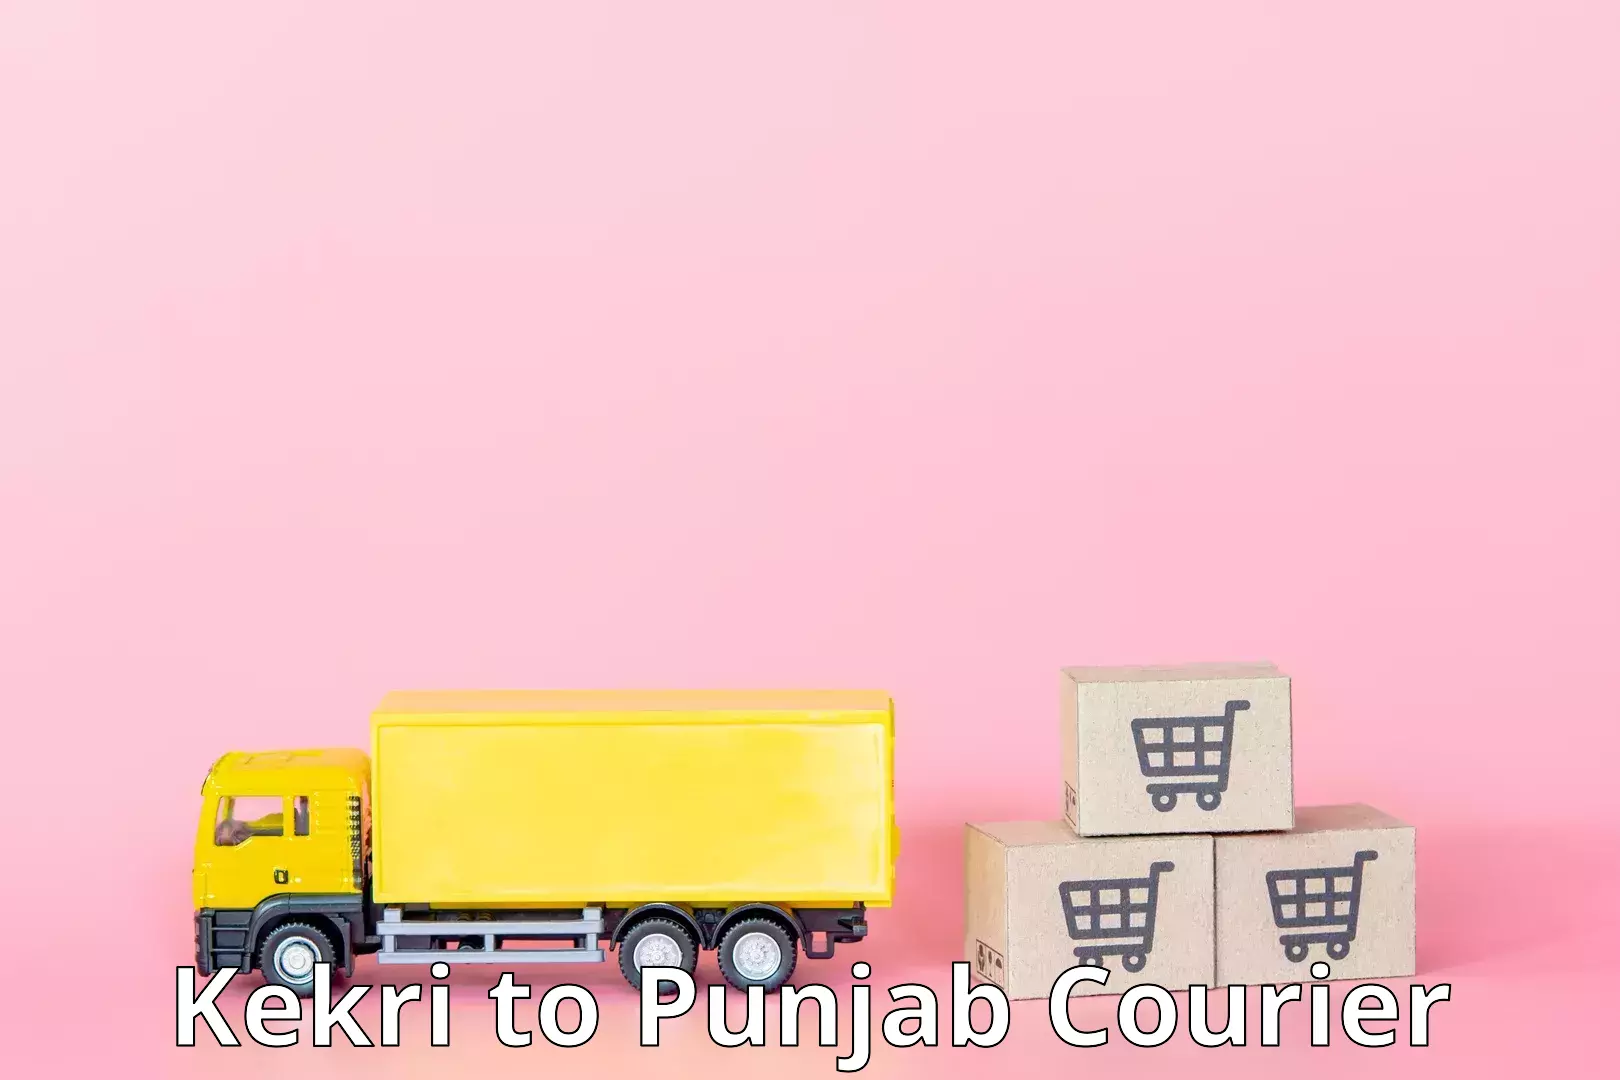 Efficient shipping platforms Kekri to Amritsar